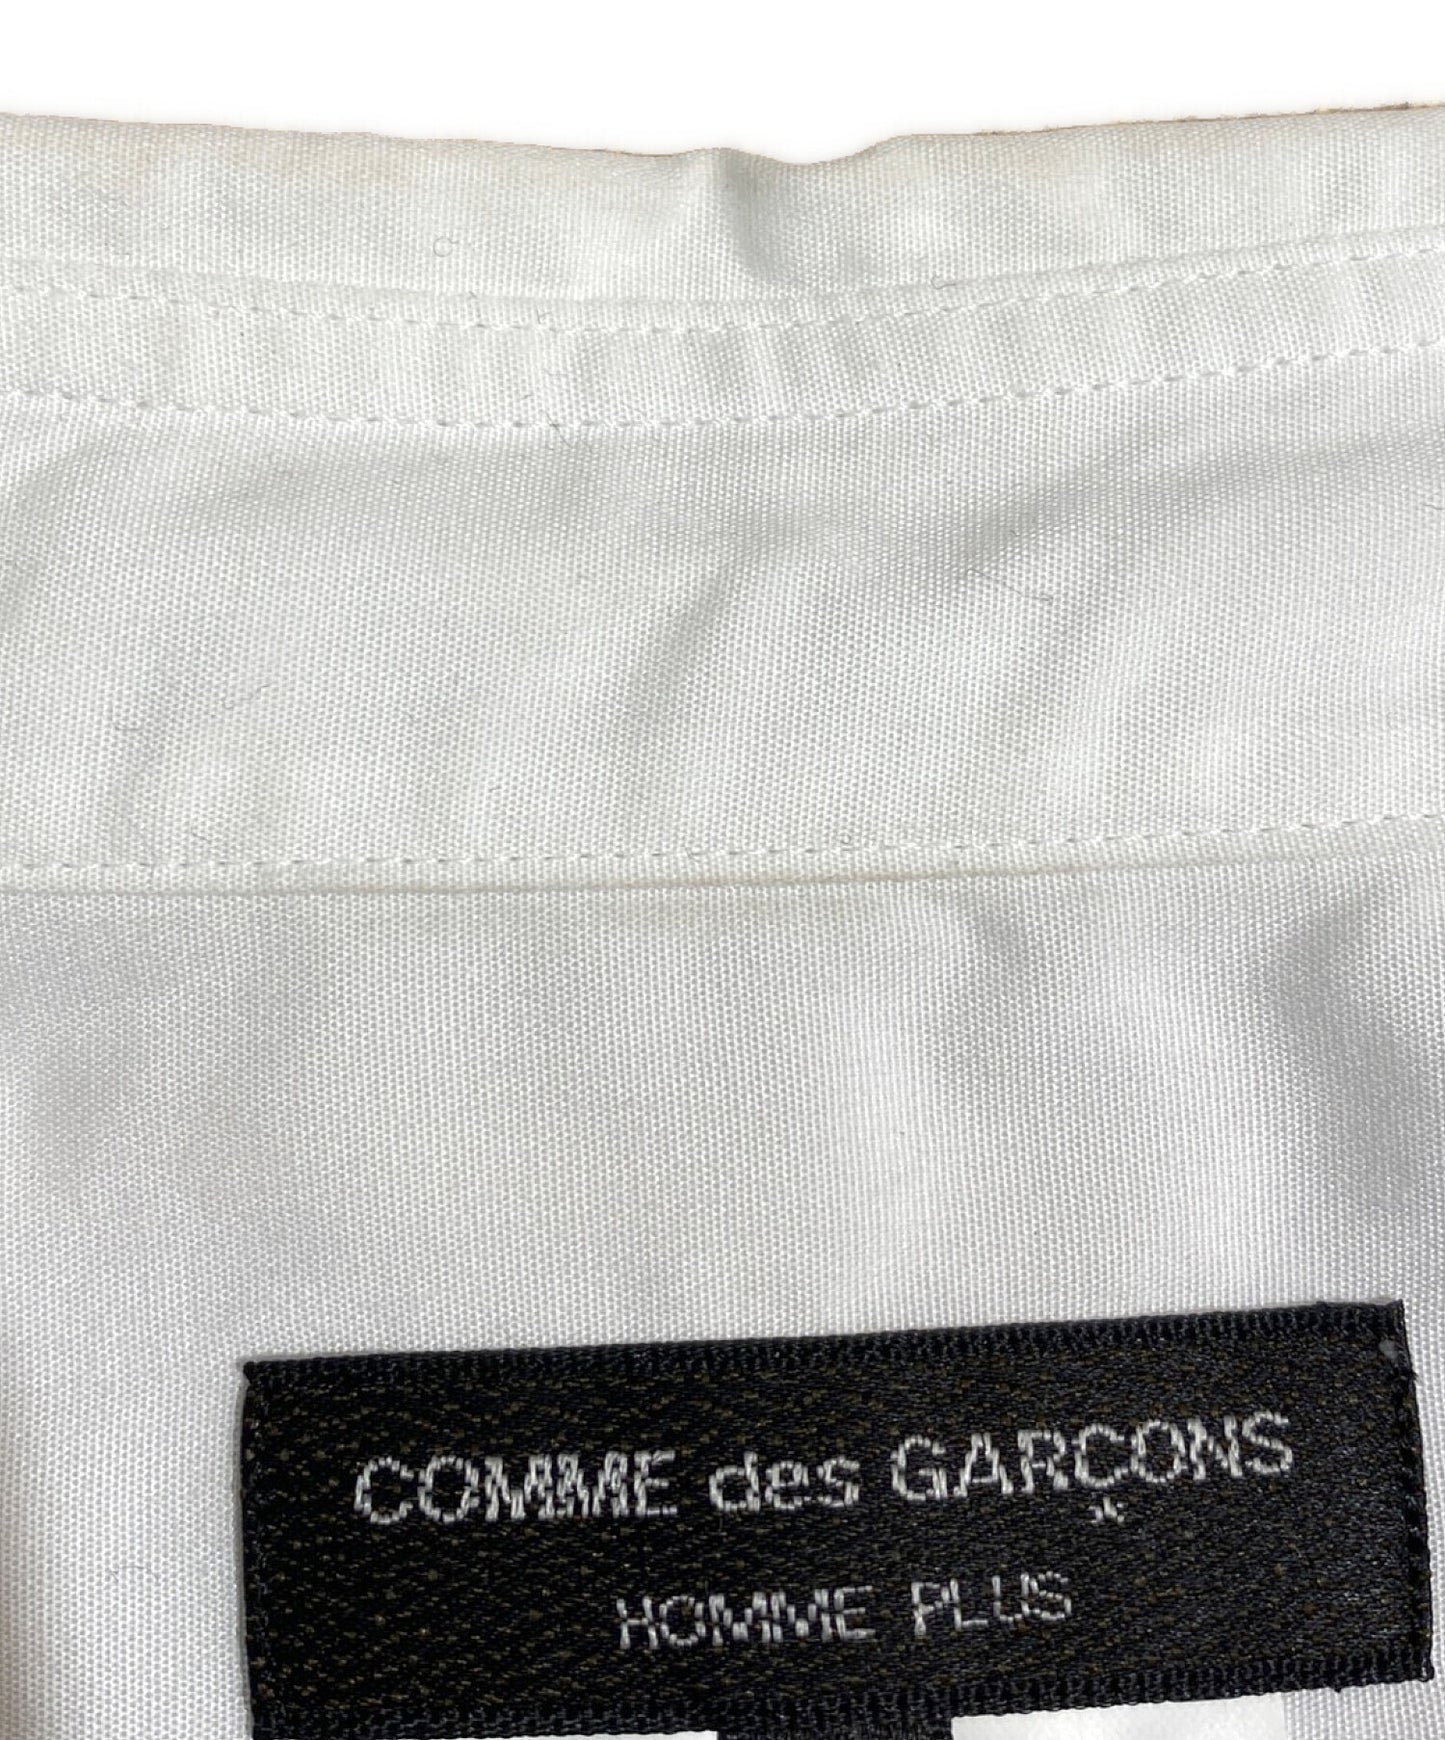 Comme des Garcons Homme Plus條紋長襯衫AD2022 PK-B019